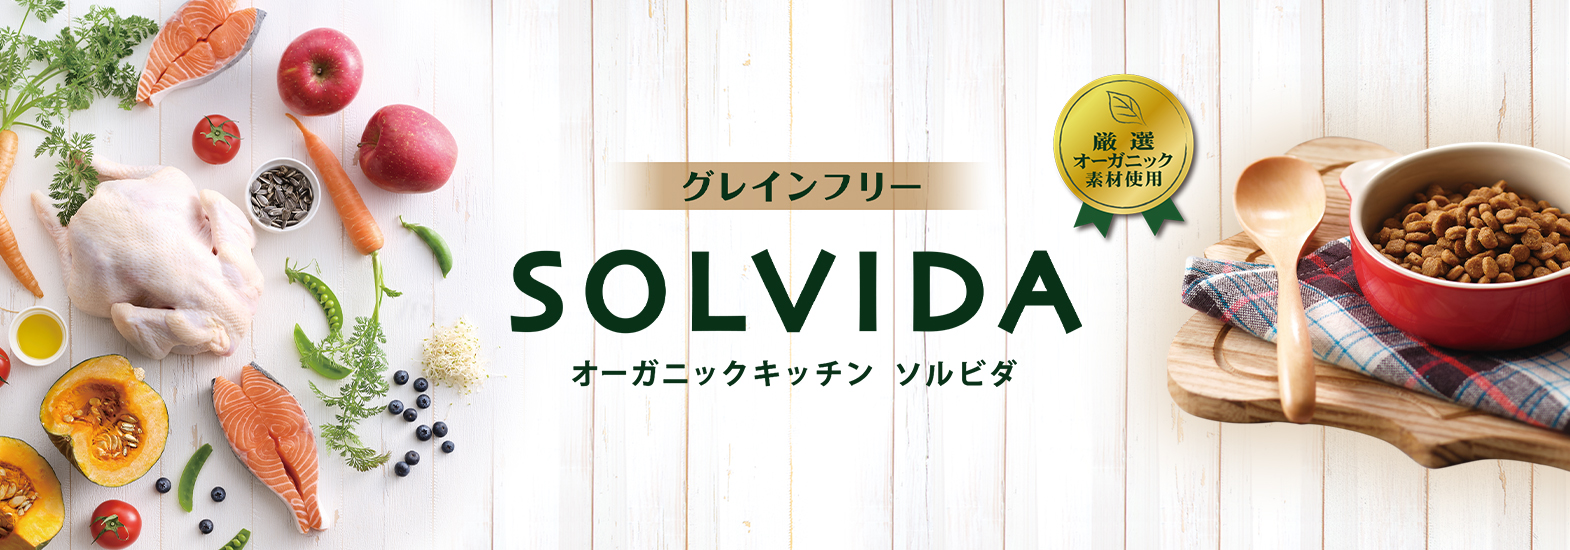 ソルビダ(SOLVIDA)はグレインフリーでオーガニックのドッグフード